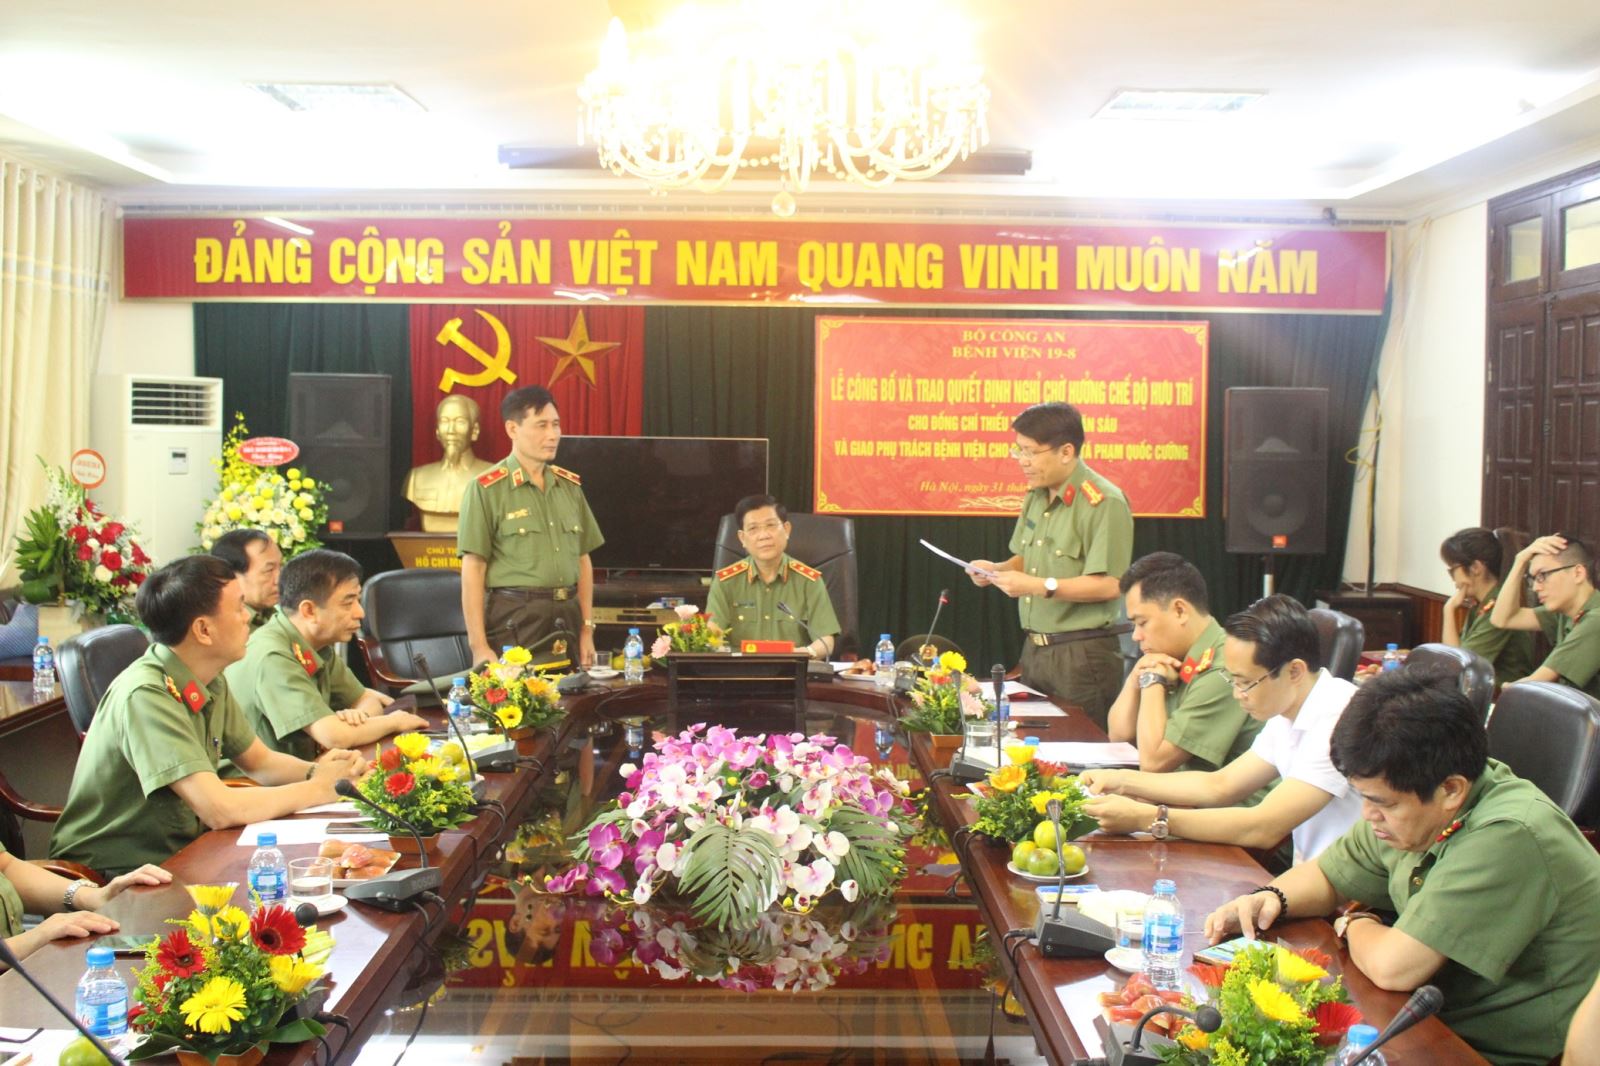 Đồng chí Thiếu tướng, PGS-TS Trần Văn Sáu, Bí thư Đảng uỷ, Giám đốc Bệnh viện 19-8 nhận quyết định nghỉ hưu